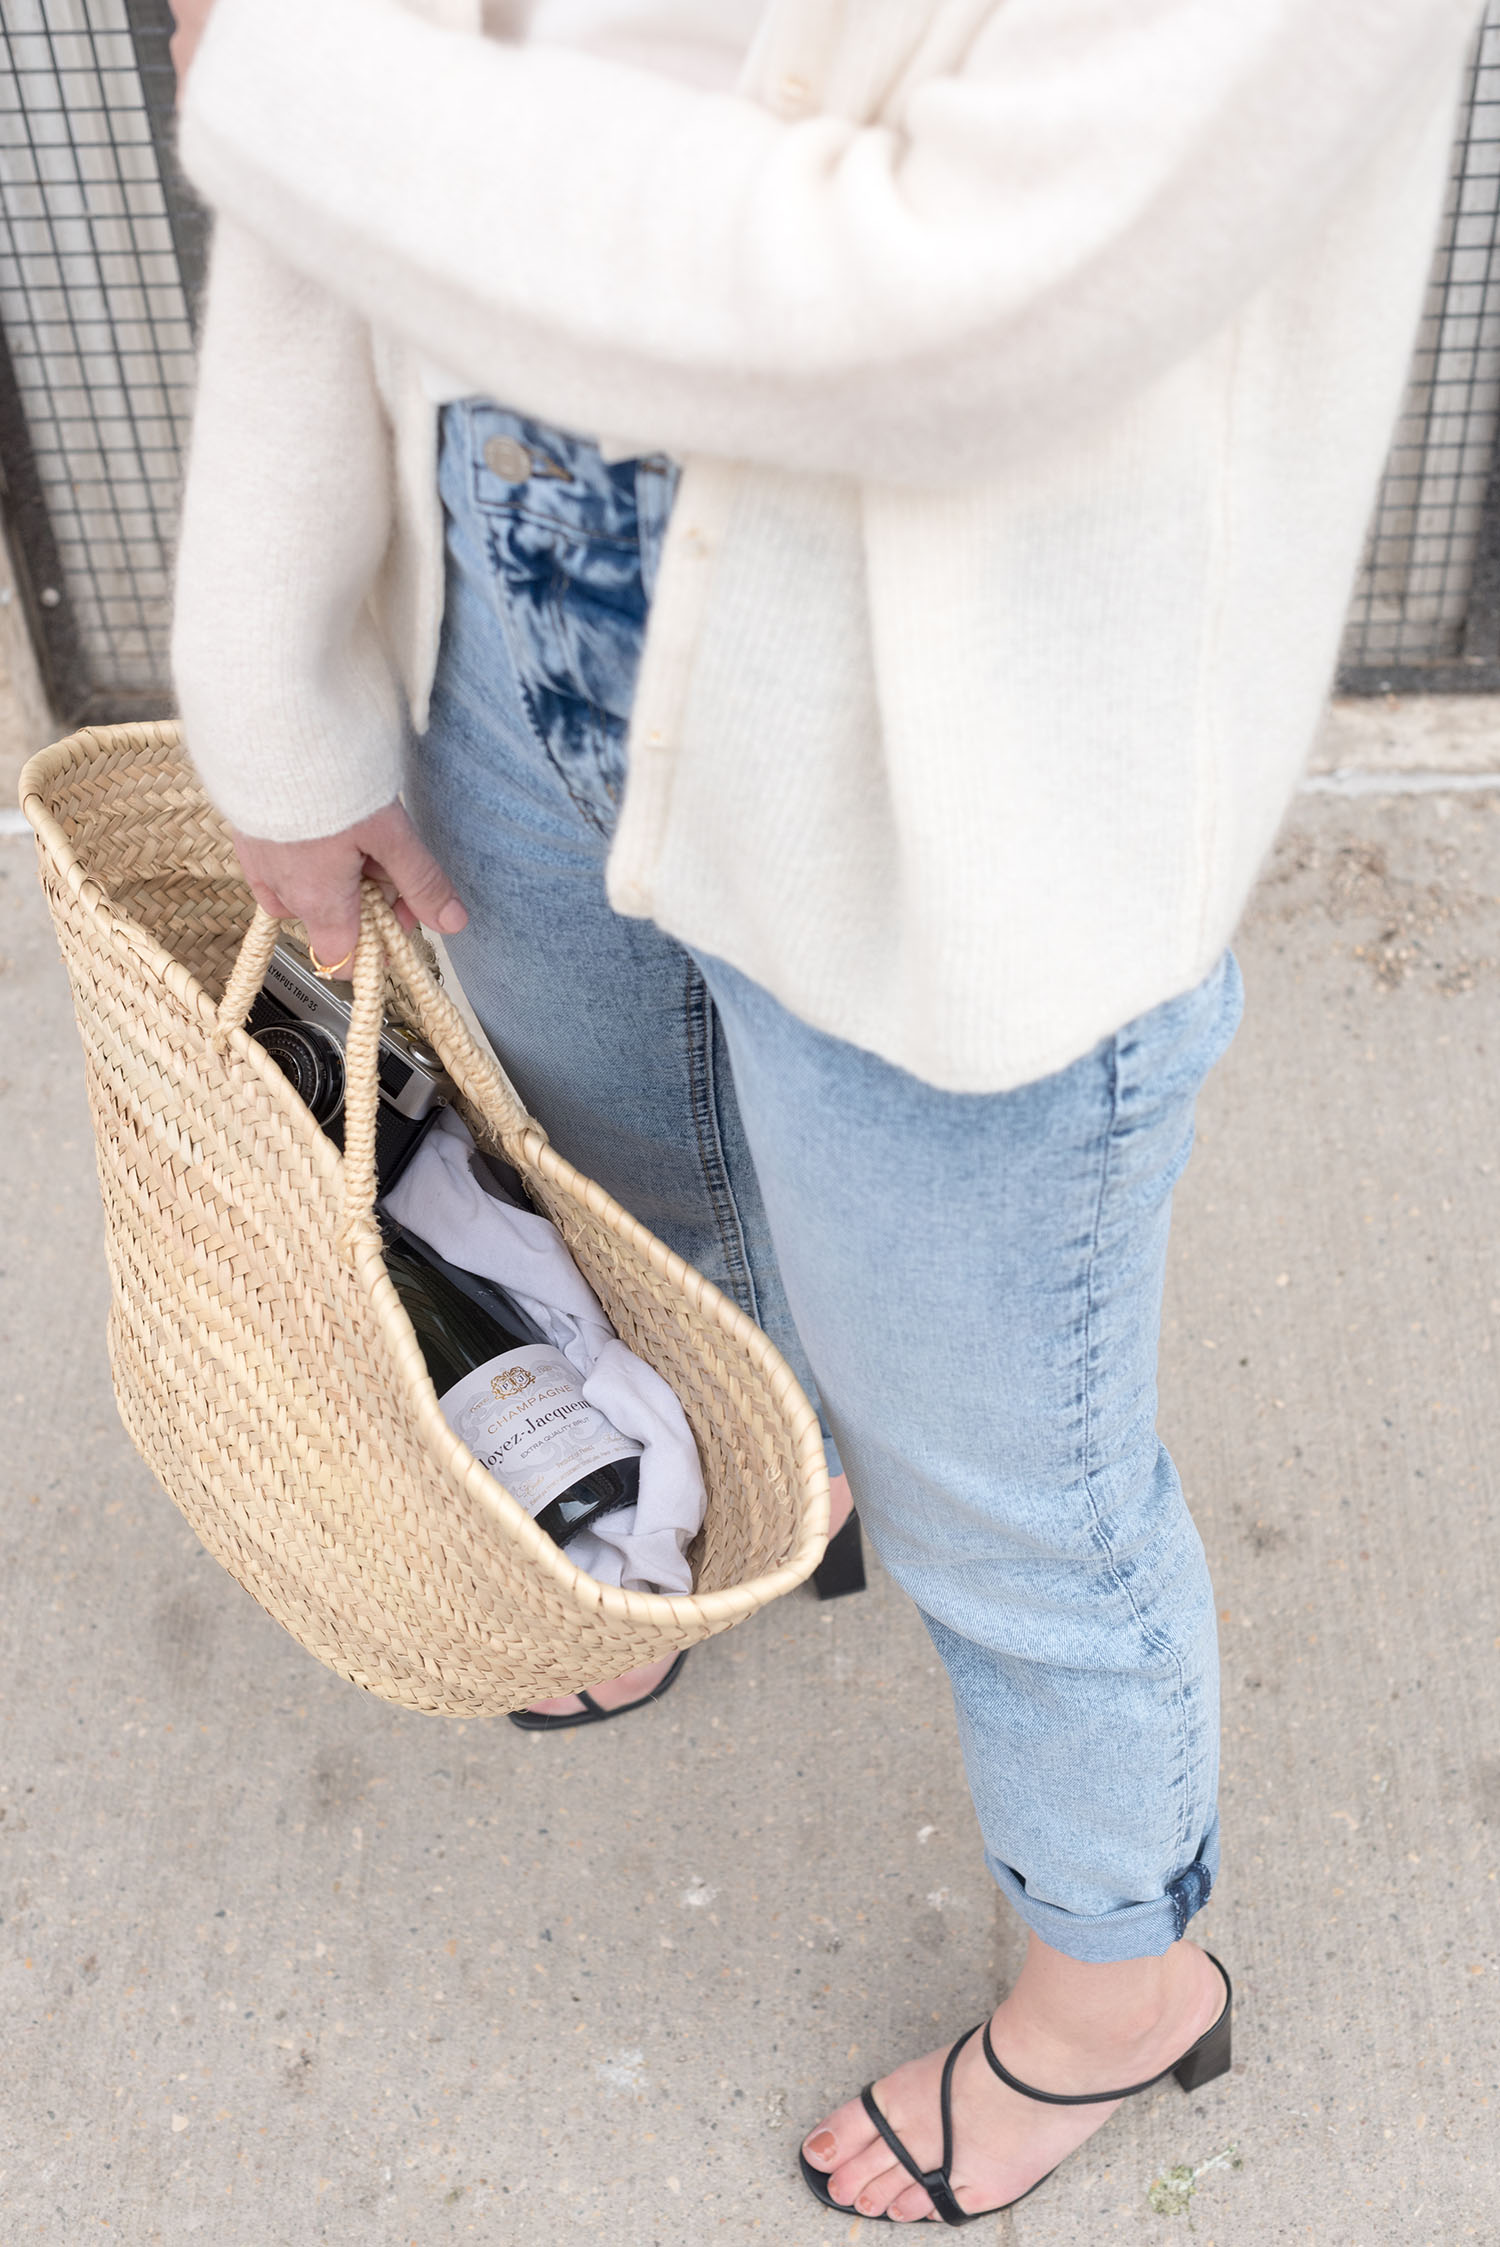 Coco & Vera - H&M jeans, Zara sandals, Sezane straw tote